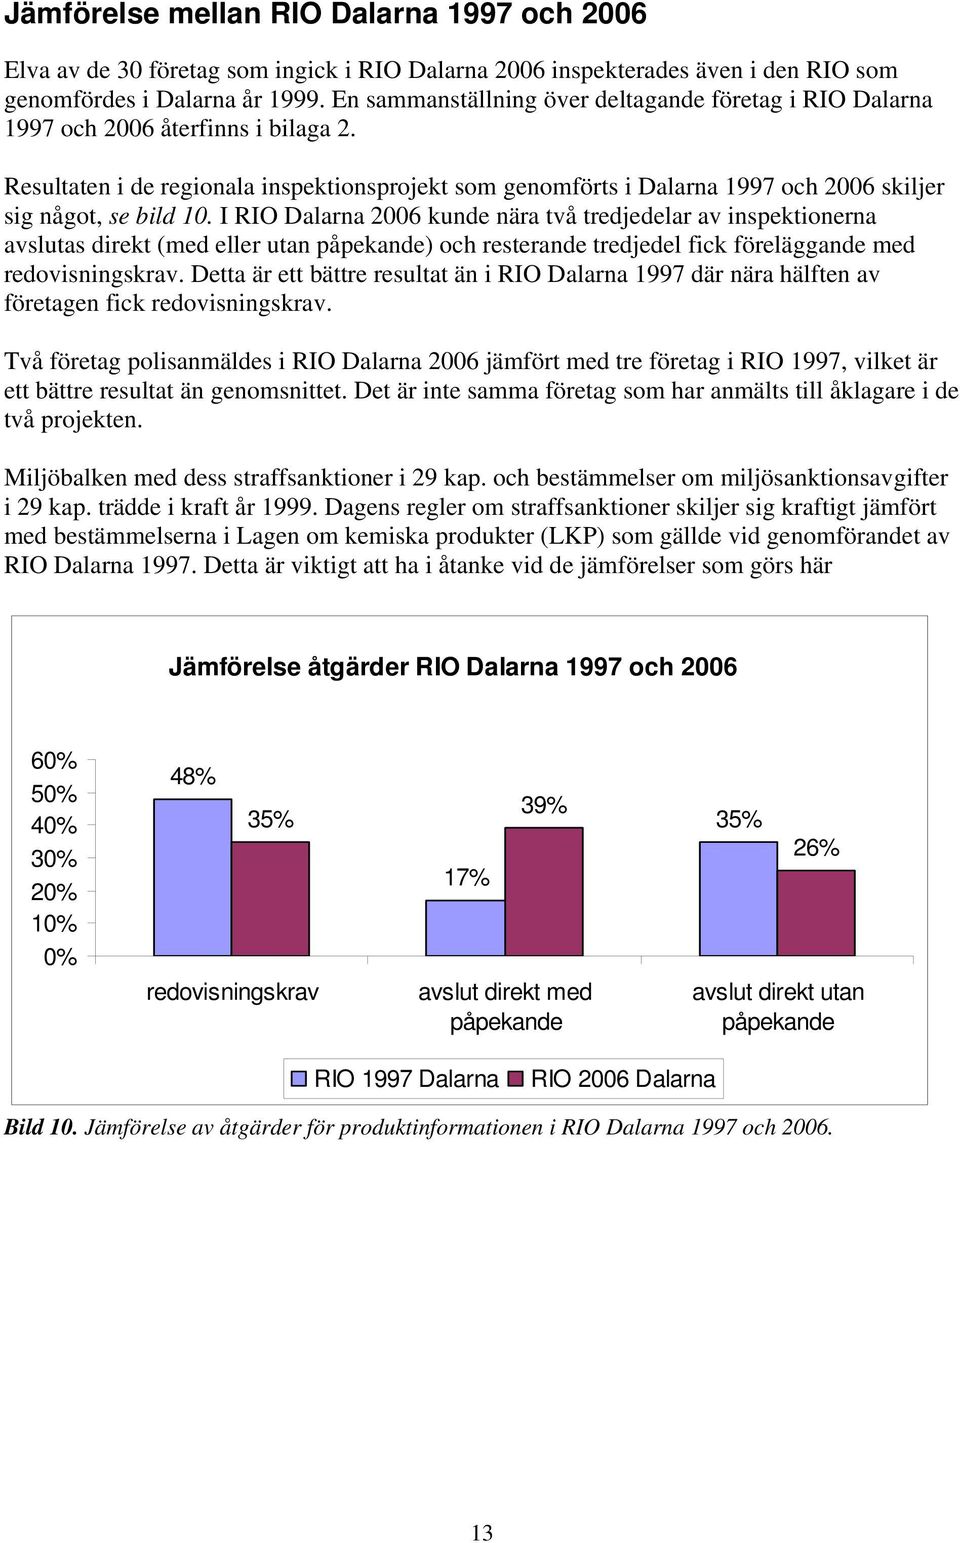 Resultaten i de regionala inspektionsprojekt som genomförts i Dalarna 1997 och 2006 skiljer sig något, se bild 10.